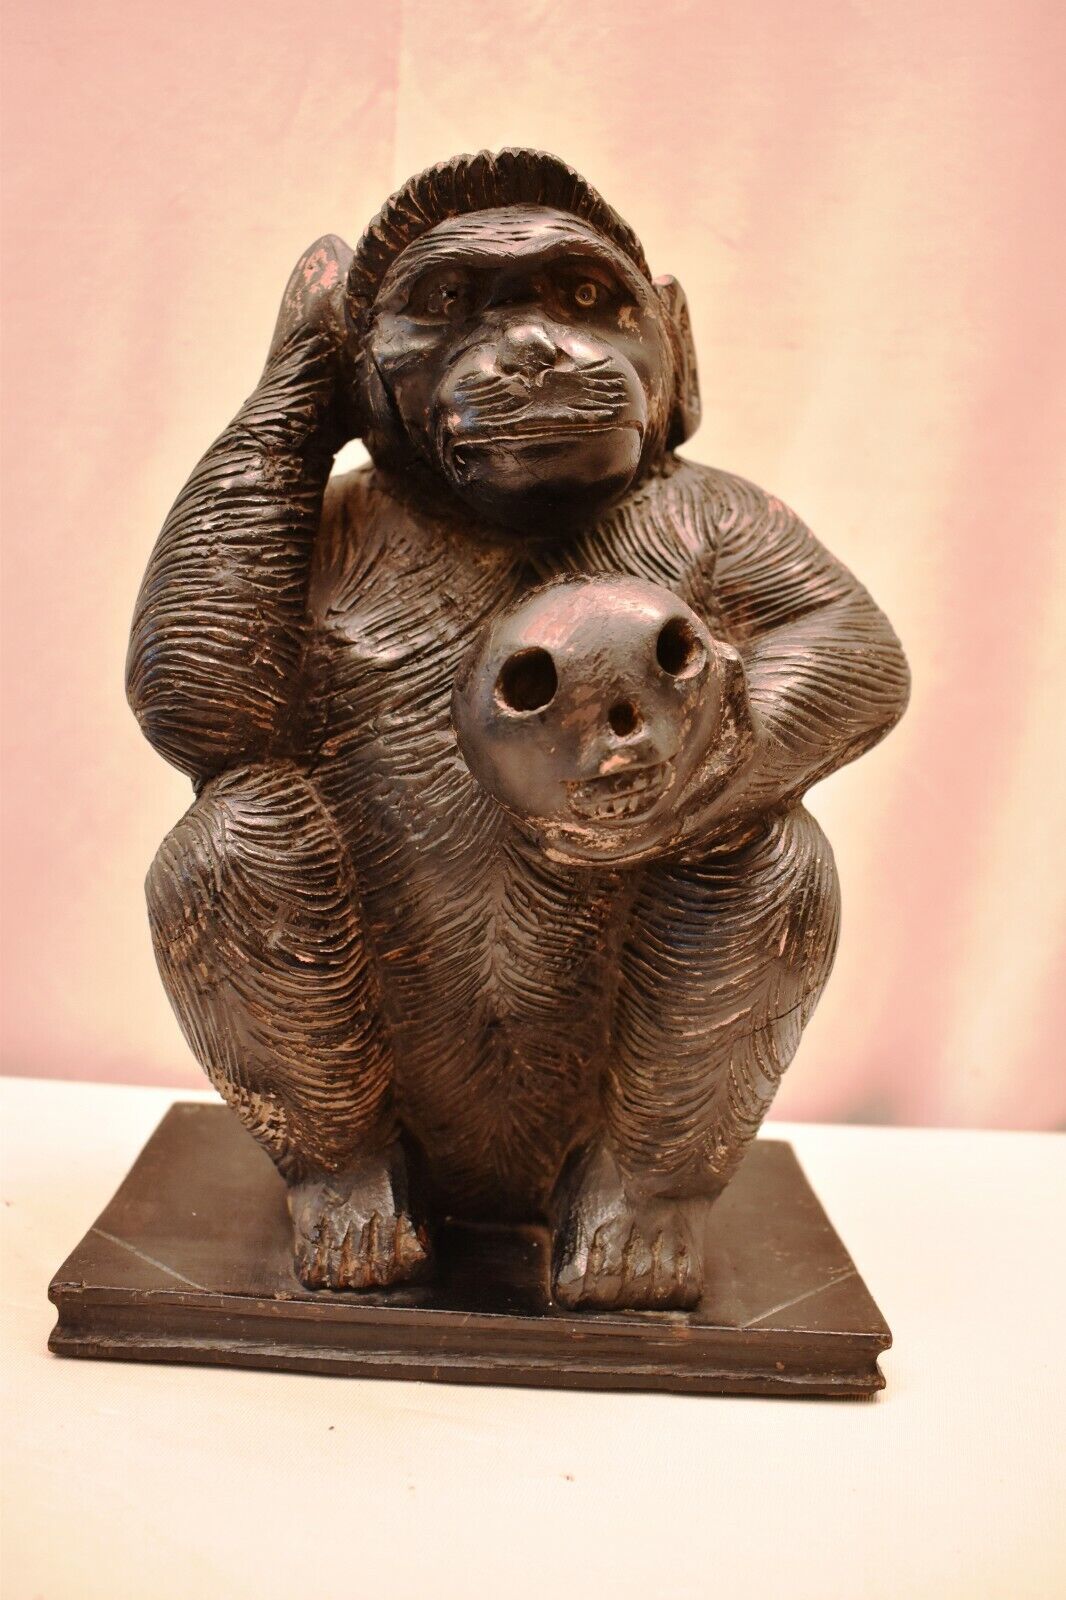 Antique Darwin Thinking Monkey Skull In Hand Sculpture Figurine Wooden Chimpanze